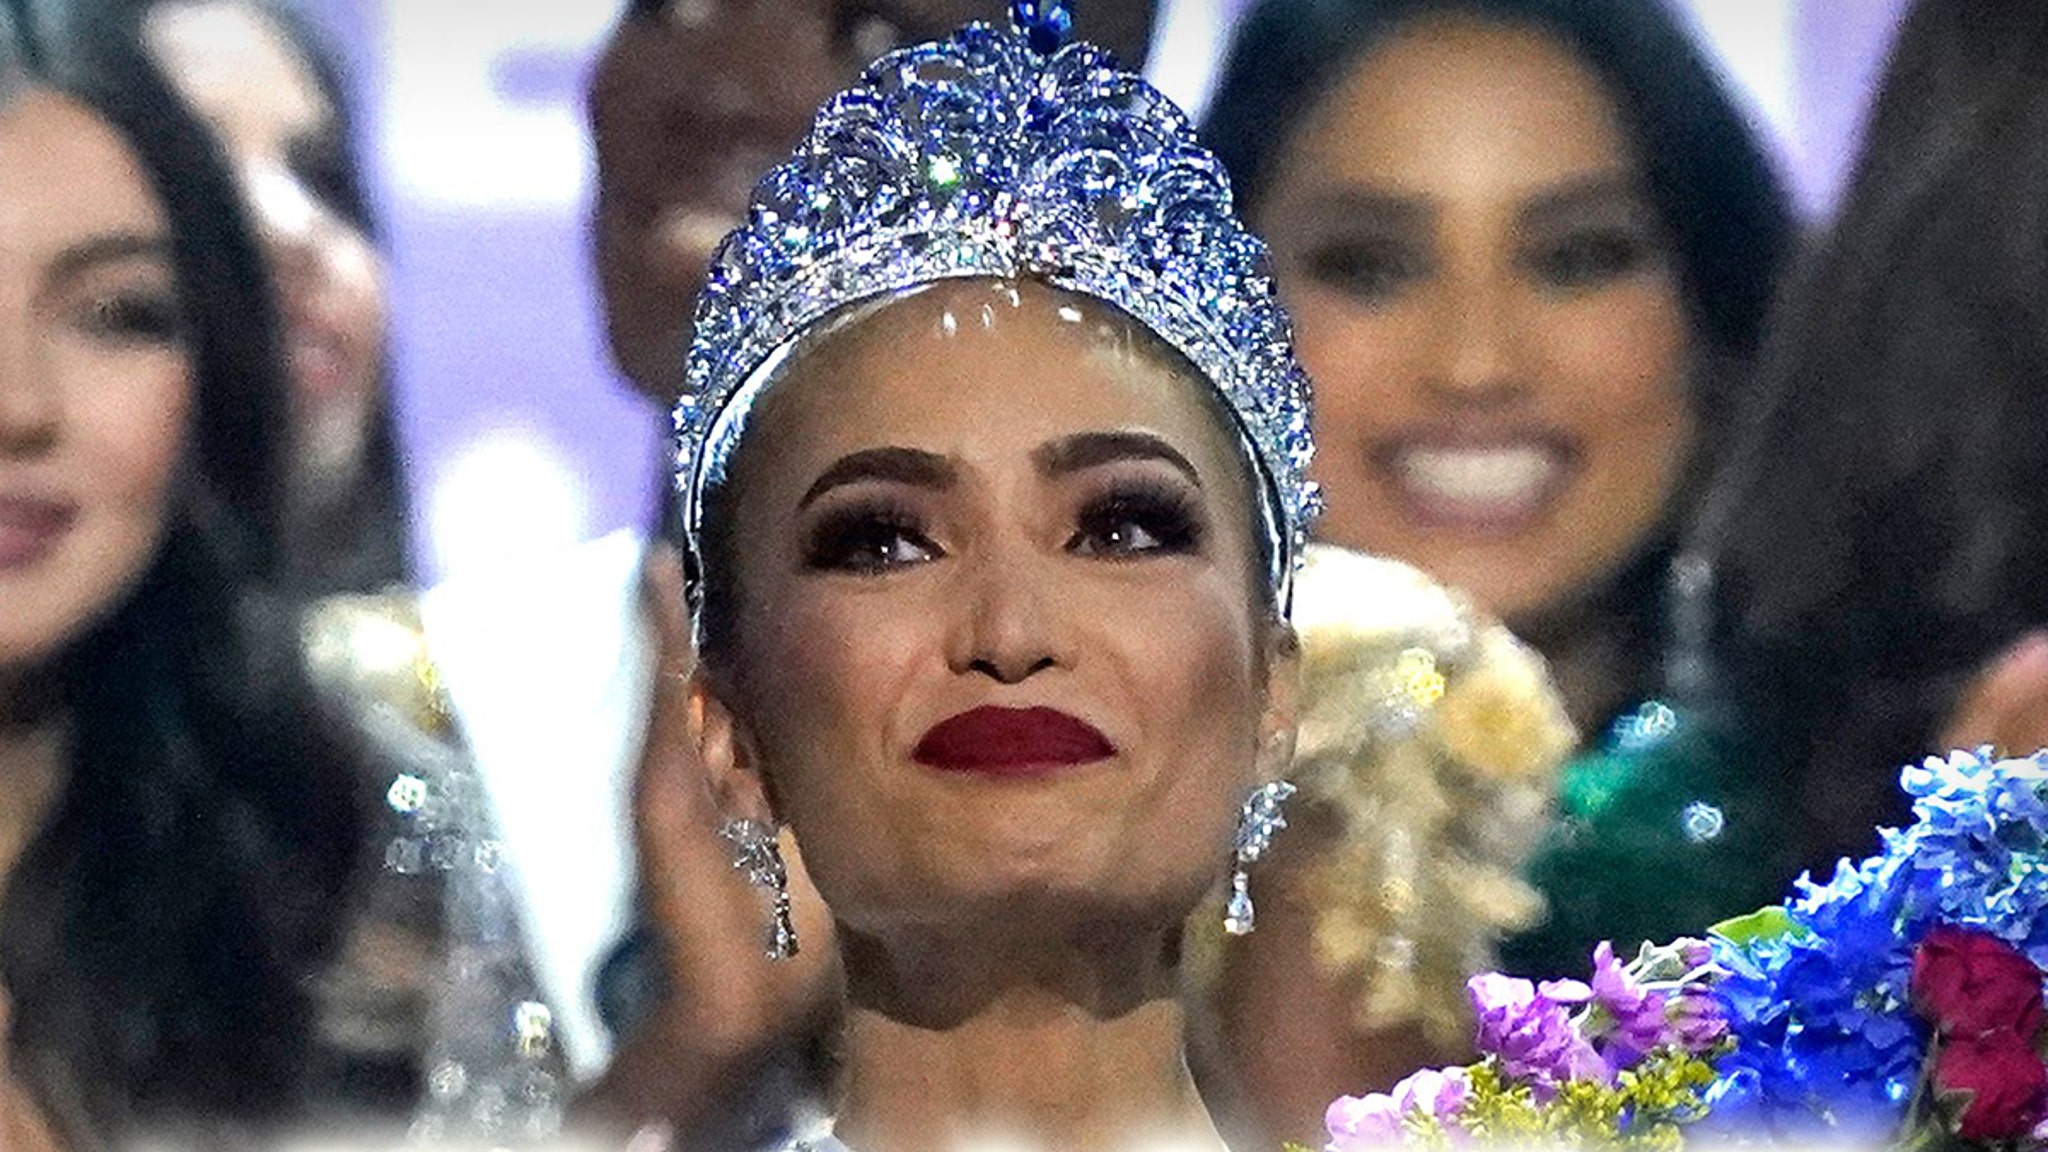 Giám đốc điều hành Hoa hậu Hoàn vũ cho biết kết quả đã được xử lý bởi bên thứ ba và phủ nhận rằng cuộc thi đã bị gian lận